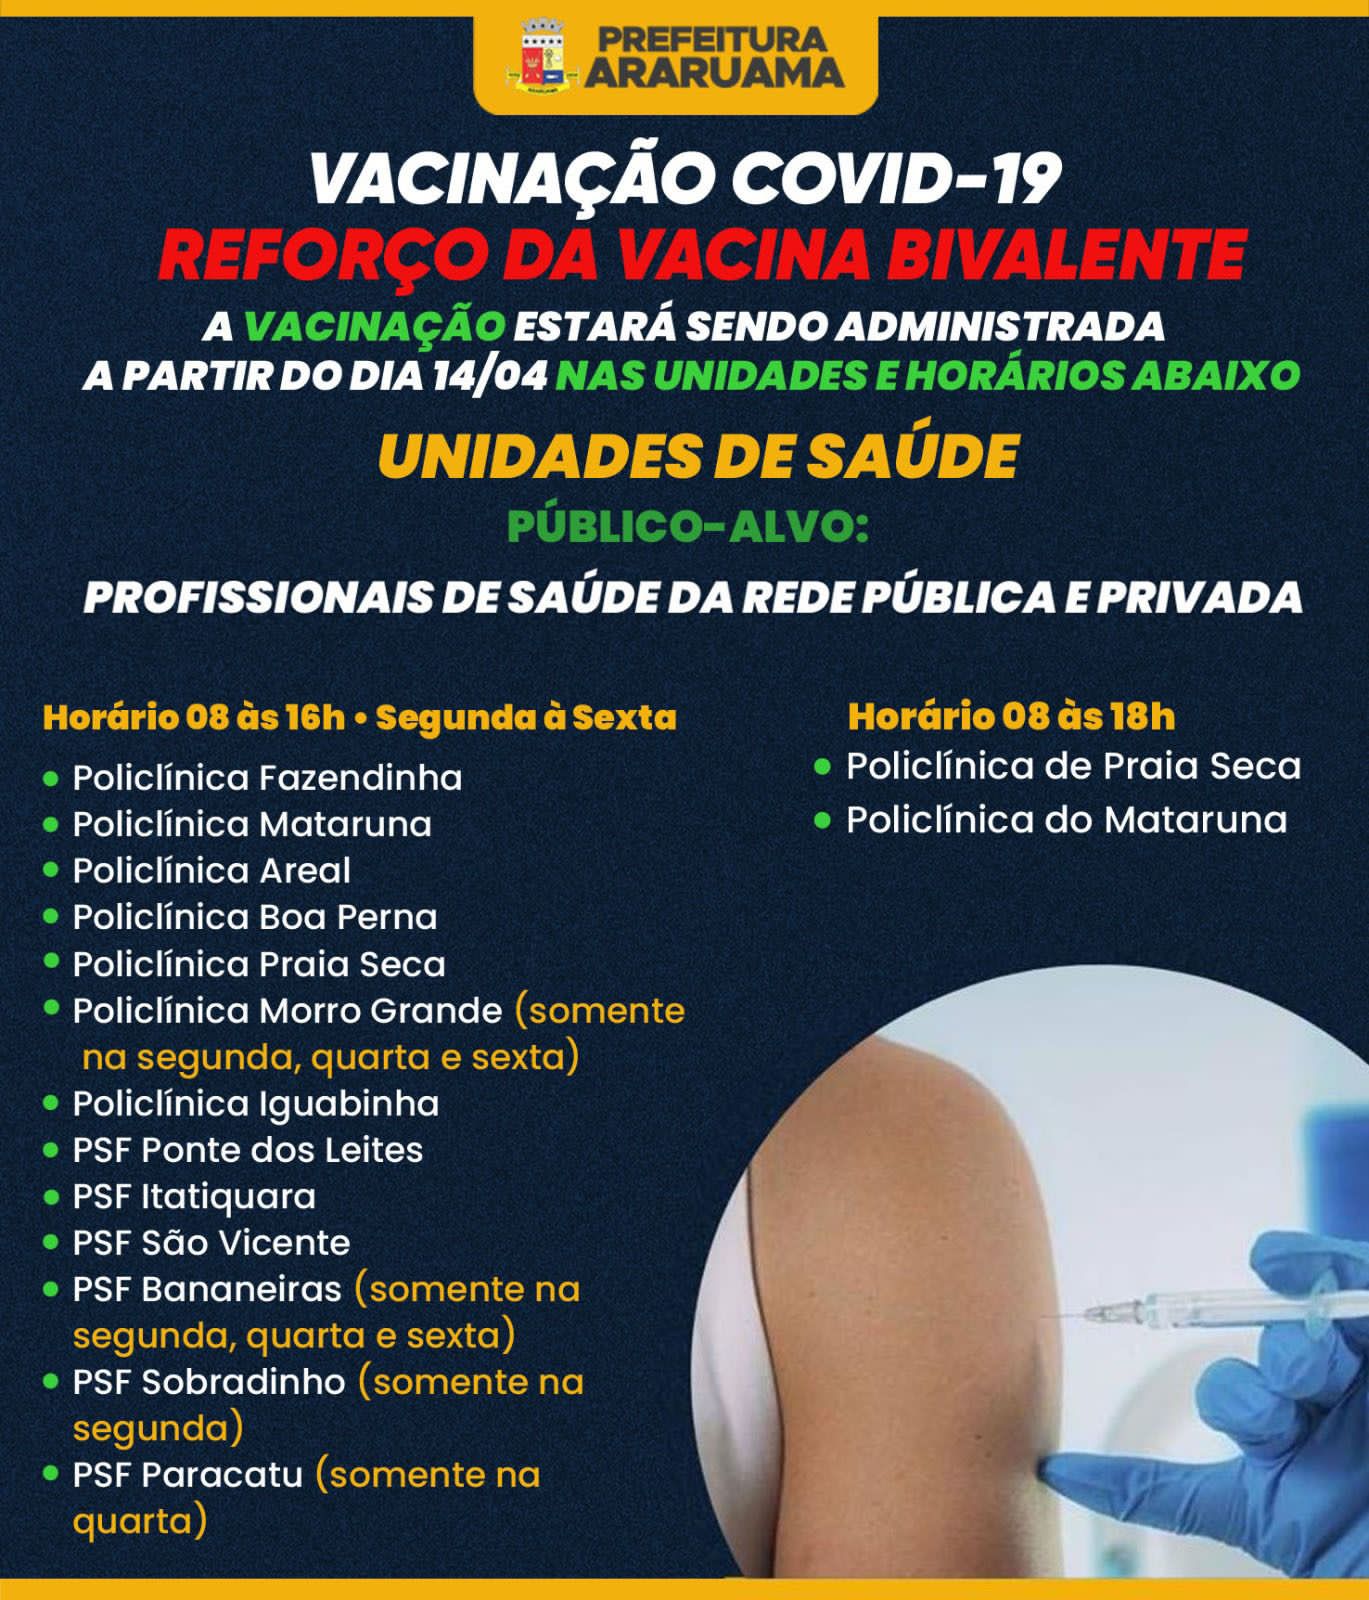 Prefeitura de Araruama inicia vacinação com a dose bivalente contra a COVID-19 em profissionais da Saúde pública e privada do município